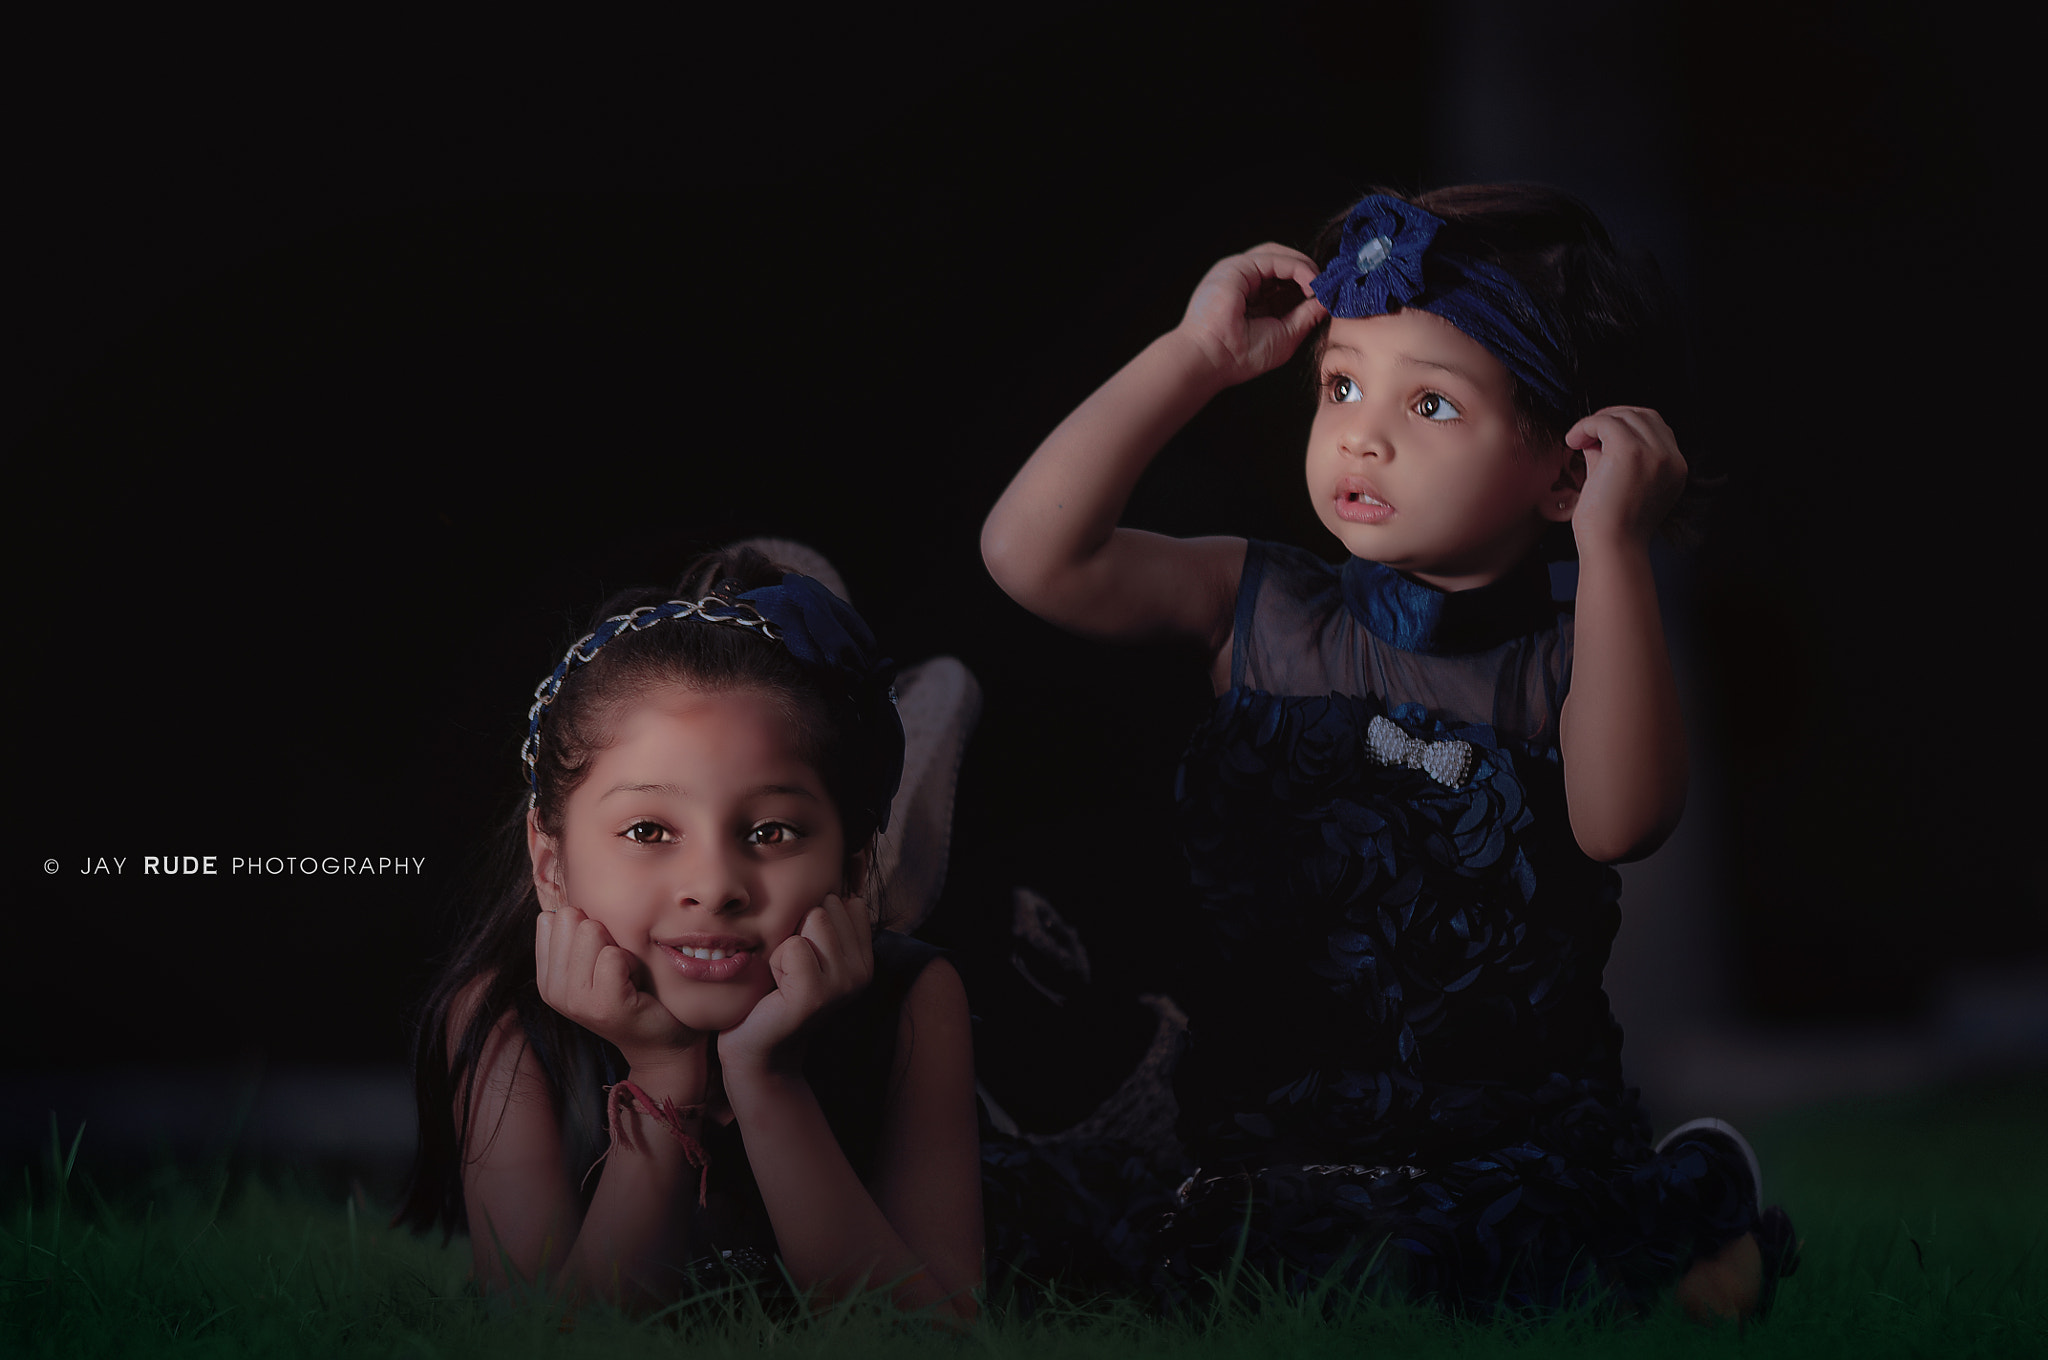 Nikon D90 + Tamron SP AF 70-200mm F2.8 Di LD (IF) MACRO sample photo. Kids make a wish photography